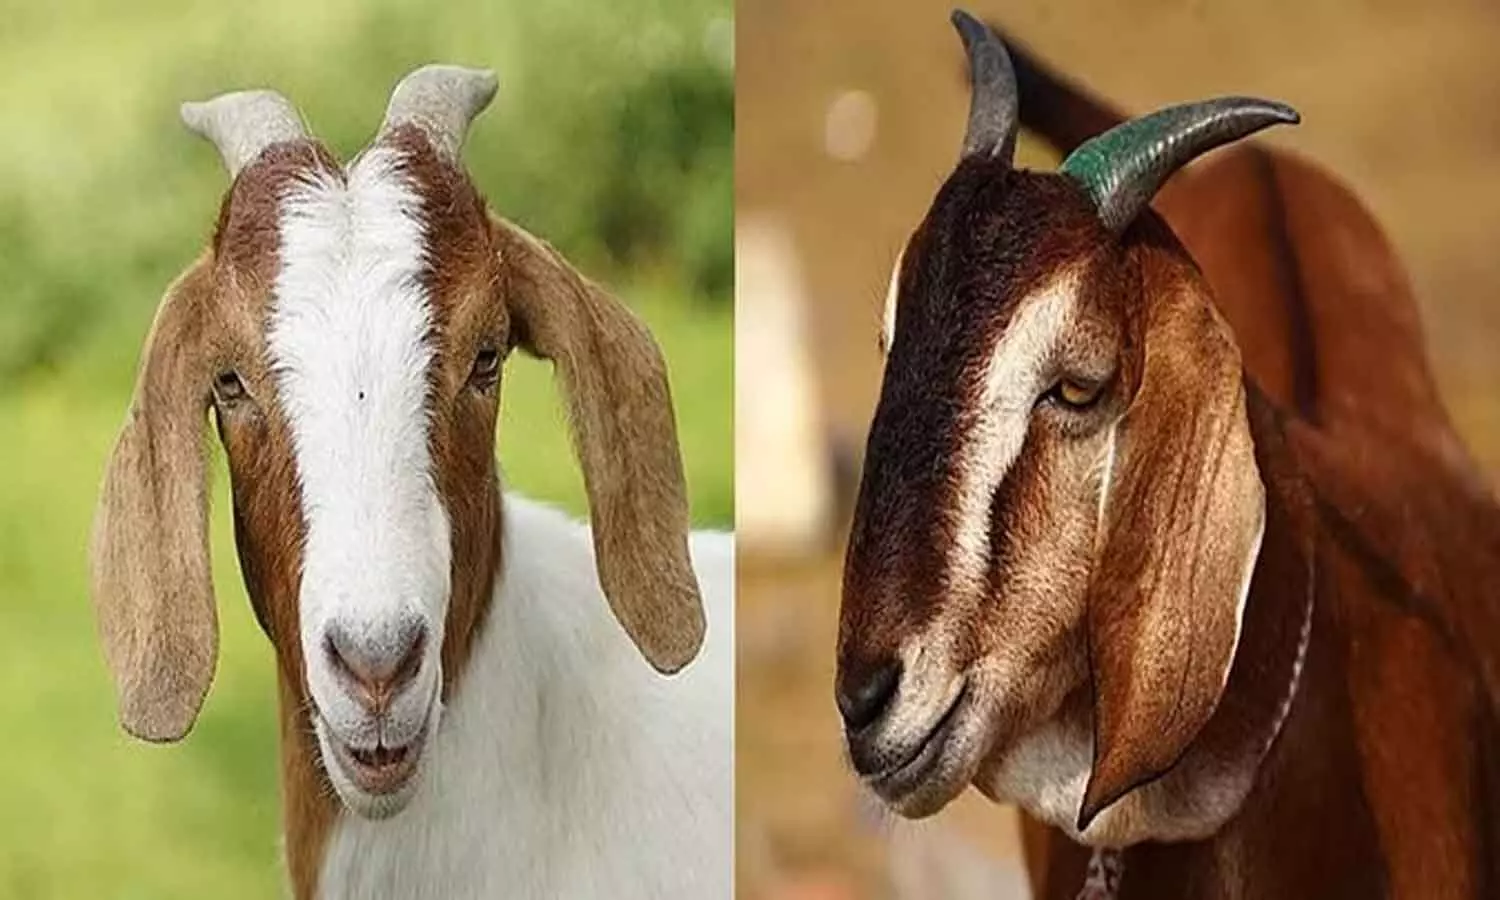 Goat Competition: एमपी में होगी अनोखी बकरा प्रतियोगिता, जिसका बढ़ेगा वजन उसको मिलेगा हजारों रुपए इनाम